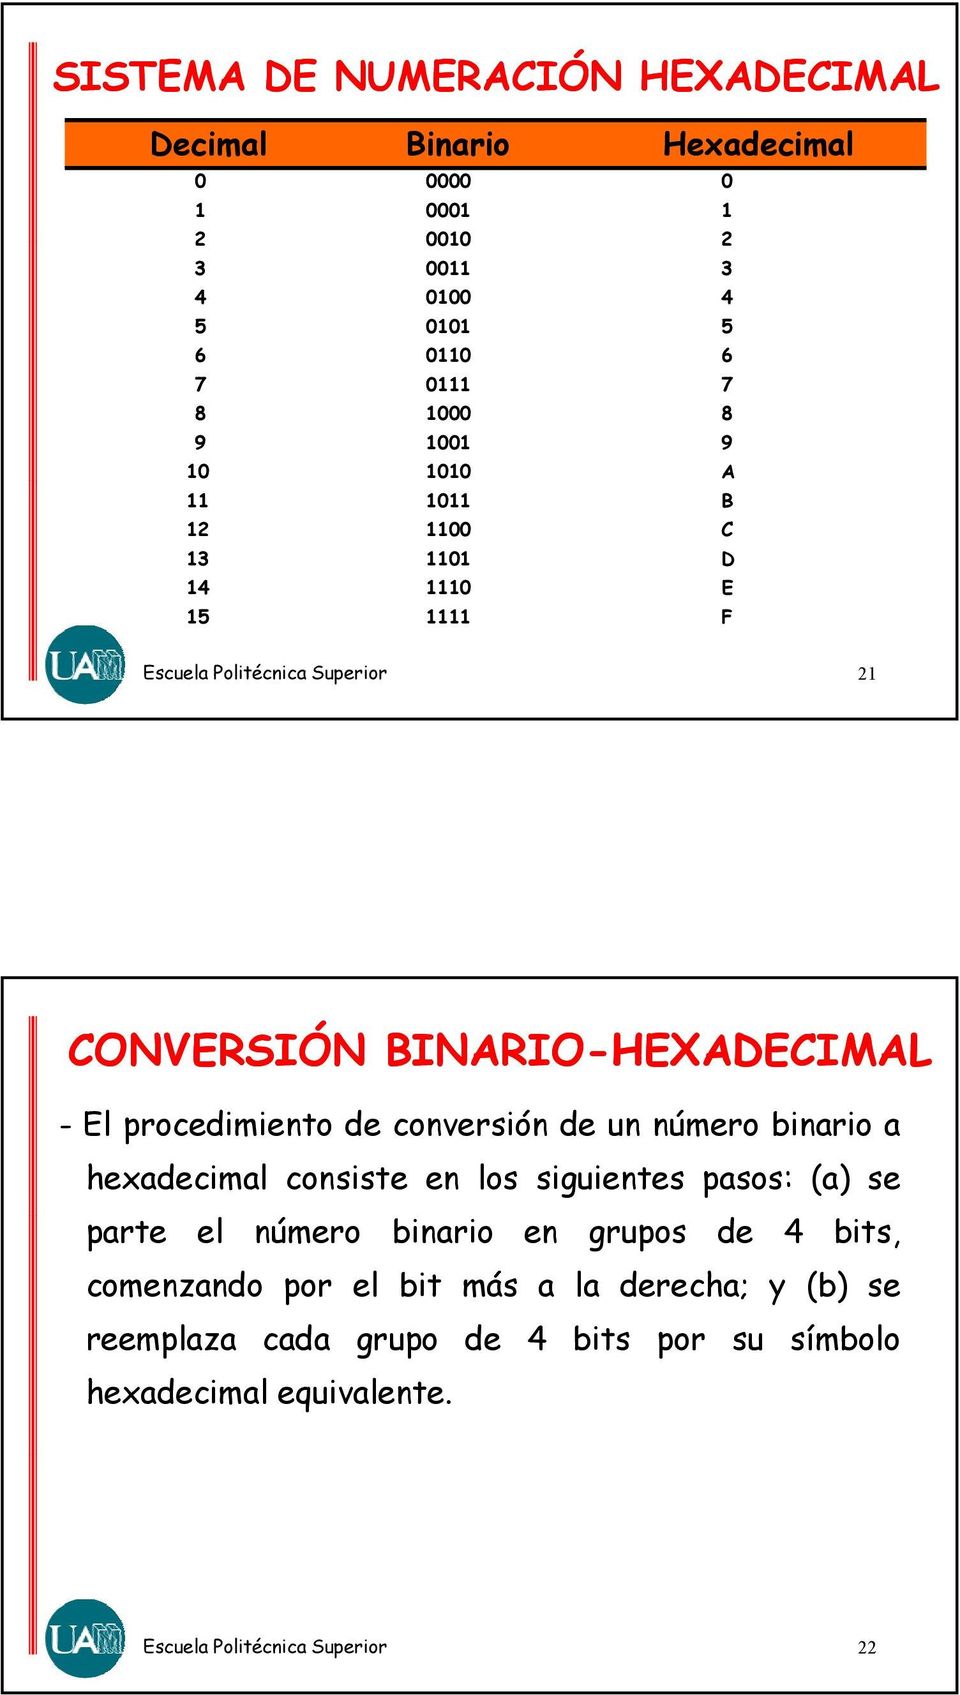 procedimiento de conversión de un número binario a hexadecimal consiste en los siguientes pasos: (a) se parte el número binario en